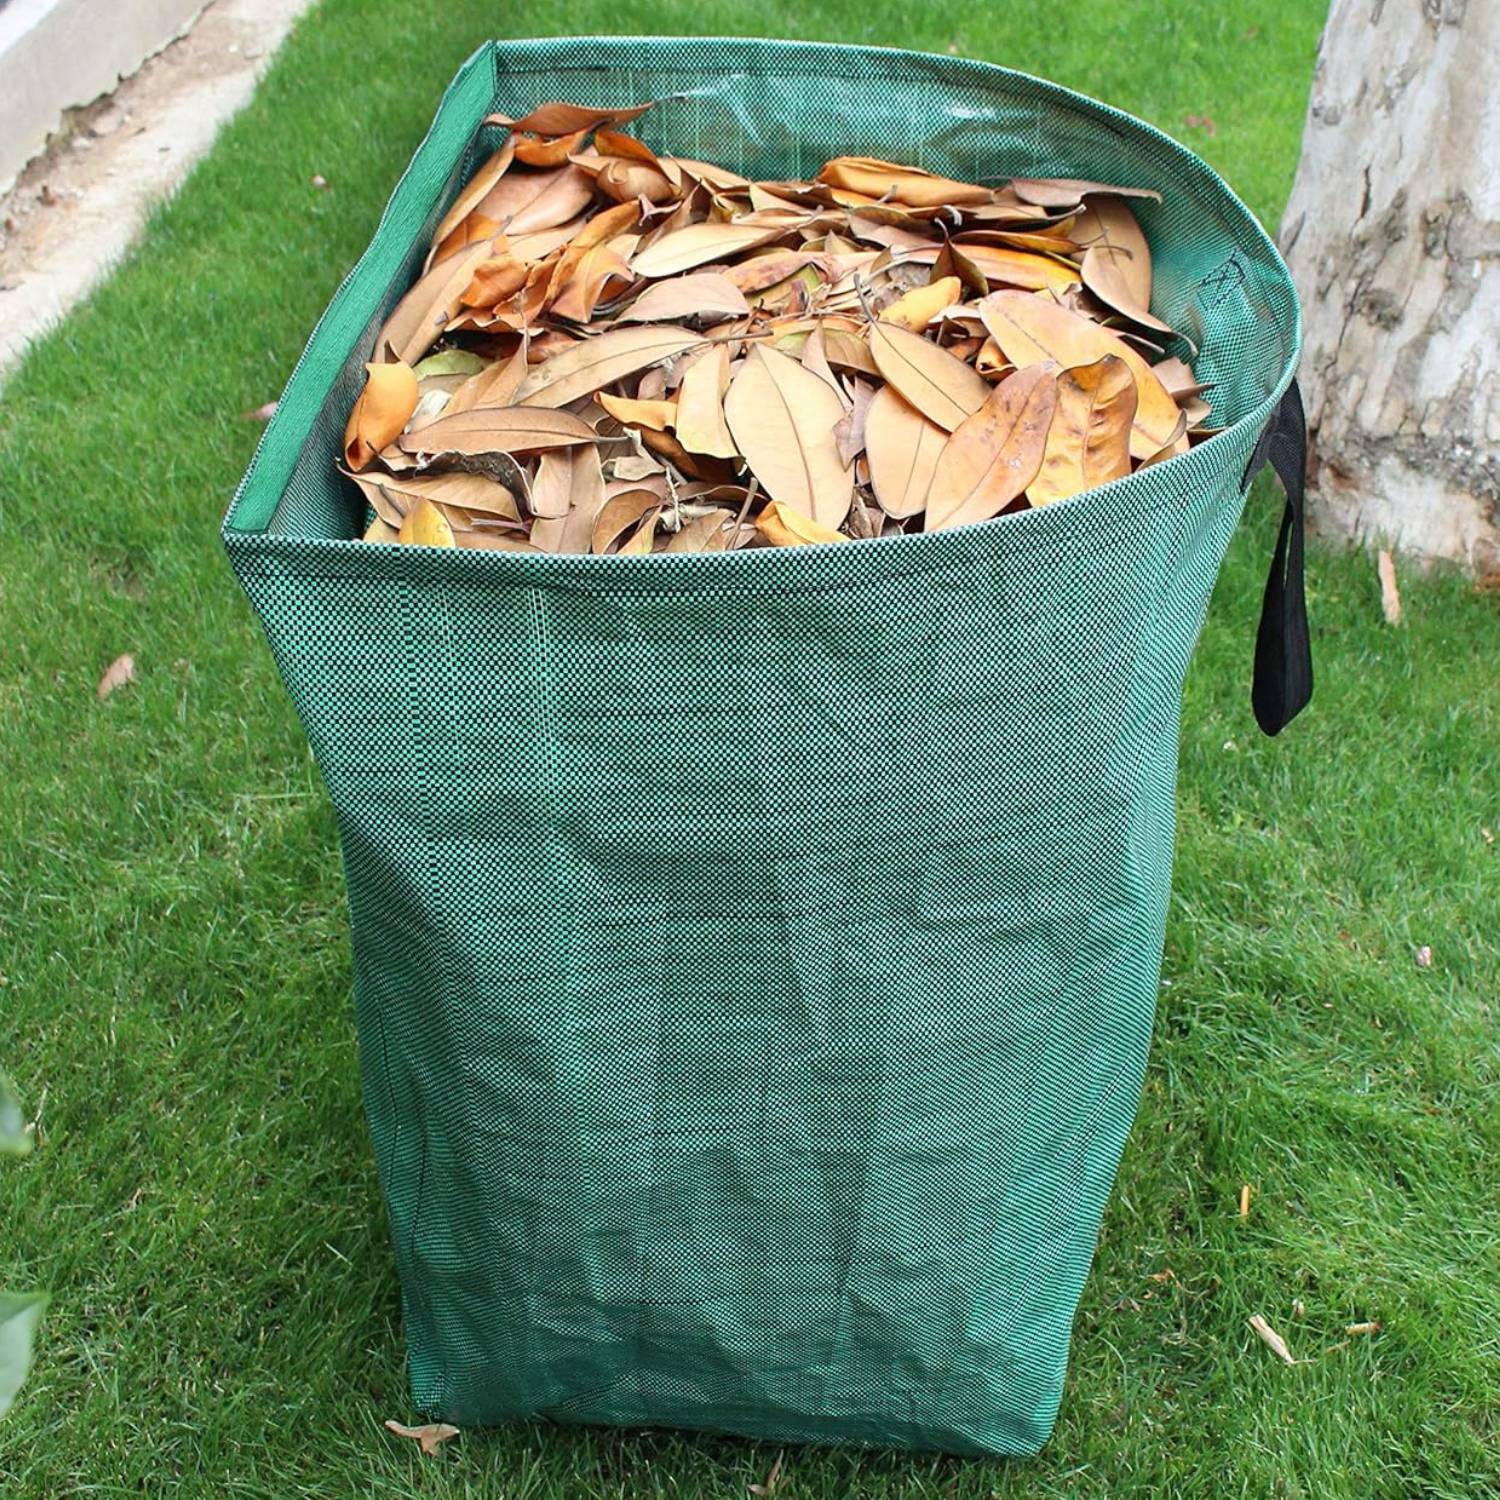 buy gardening waste bag